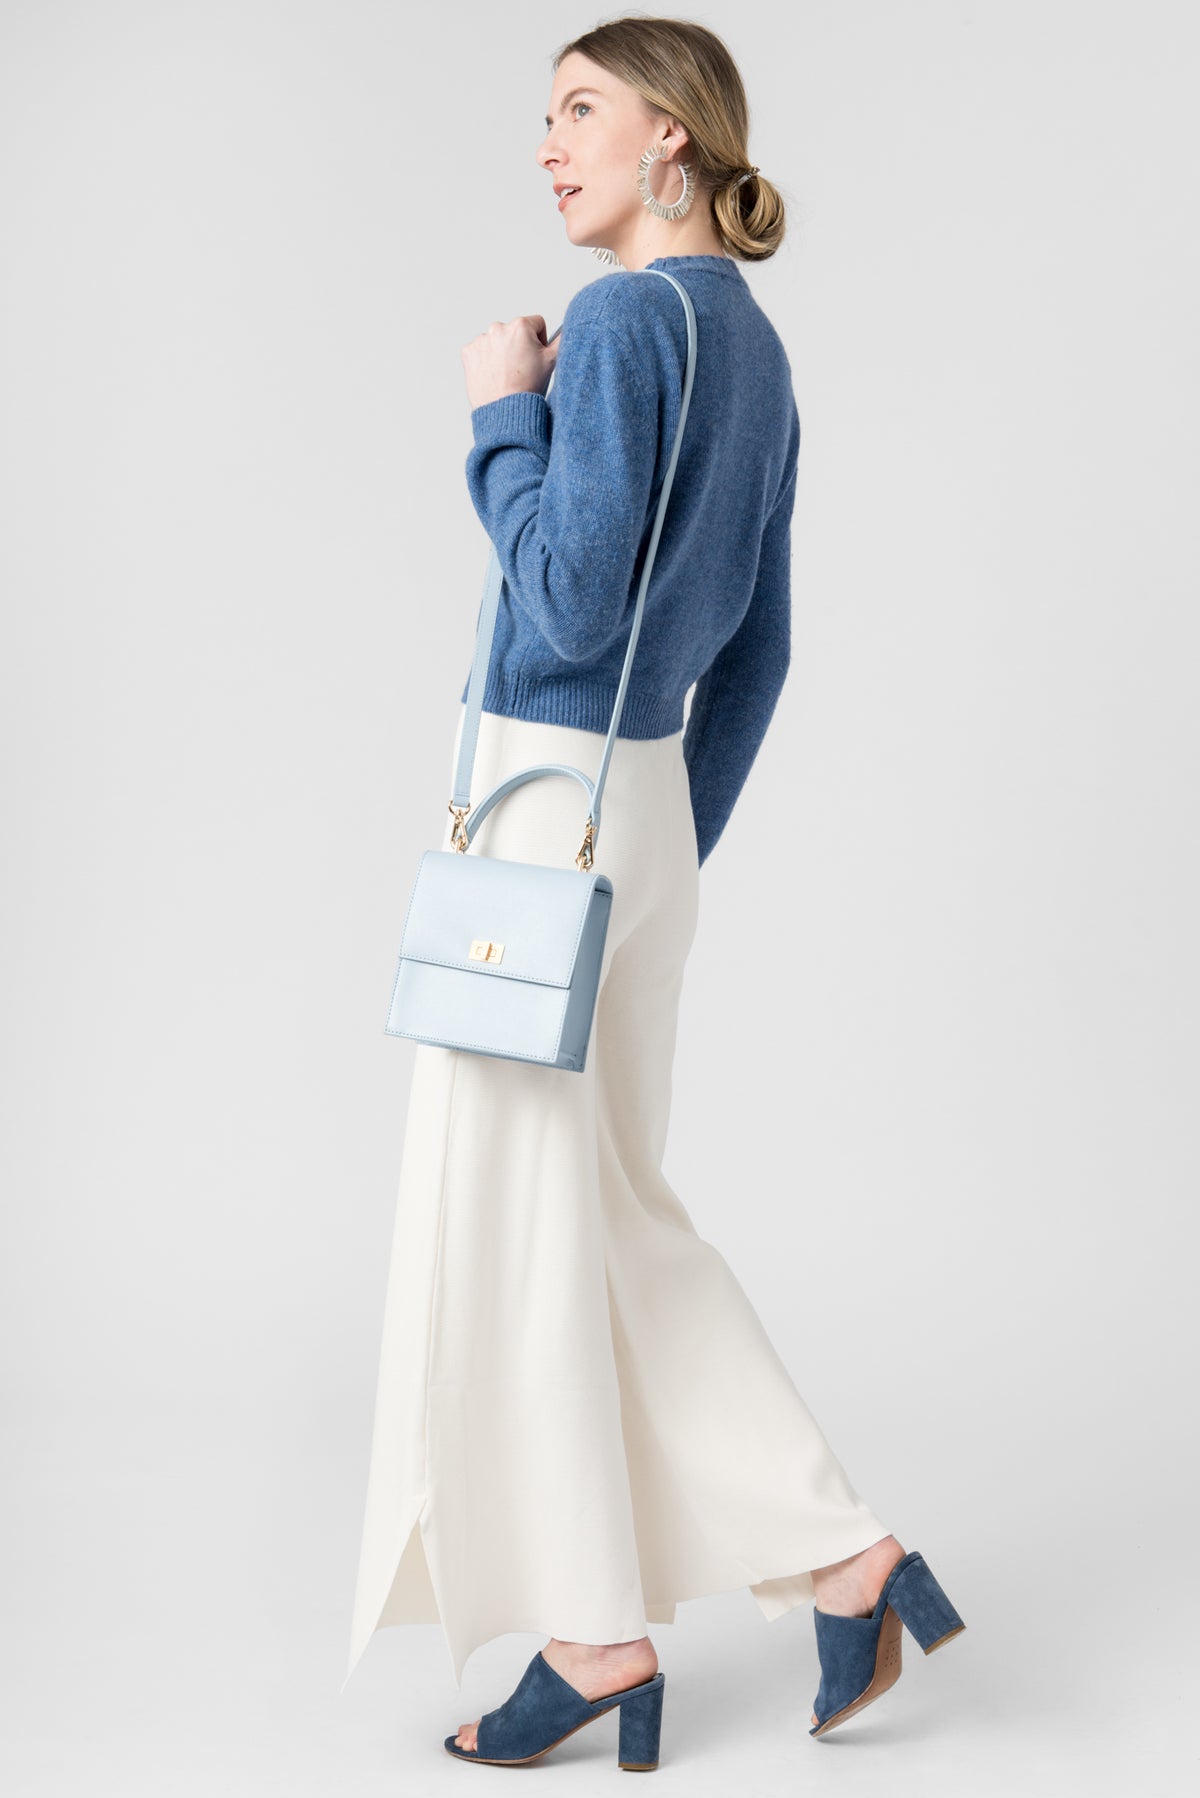 image of model with Neely & Chloe blue shoulder bag